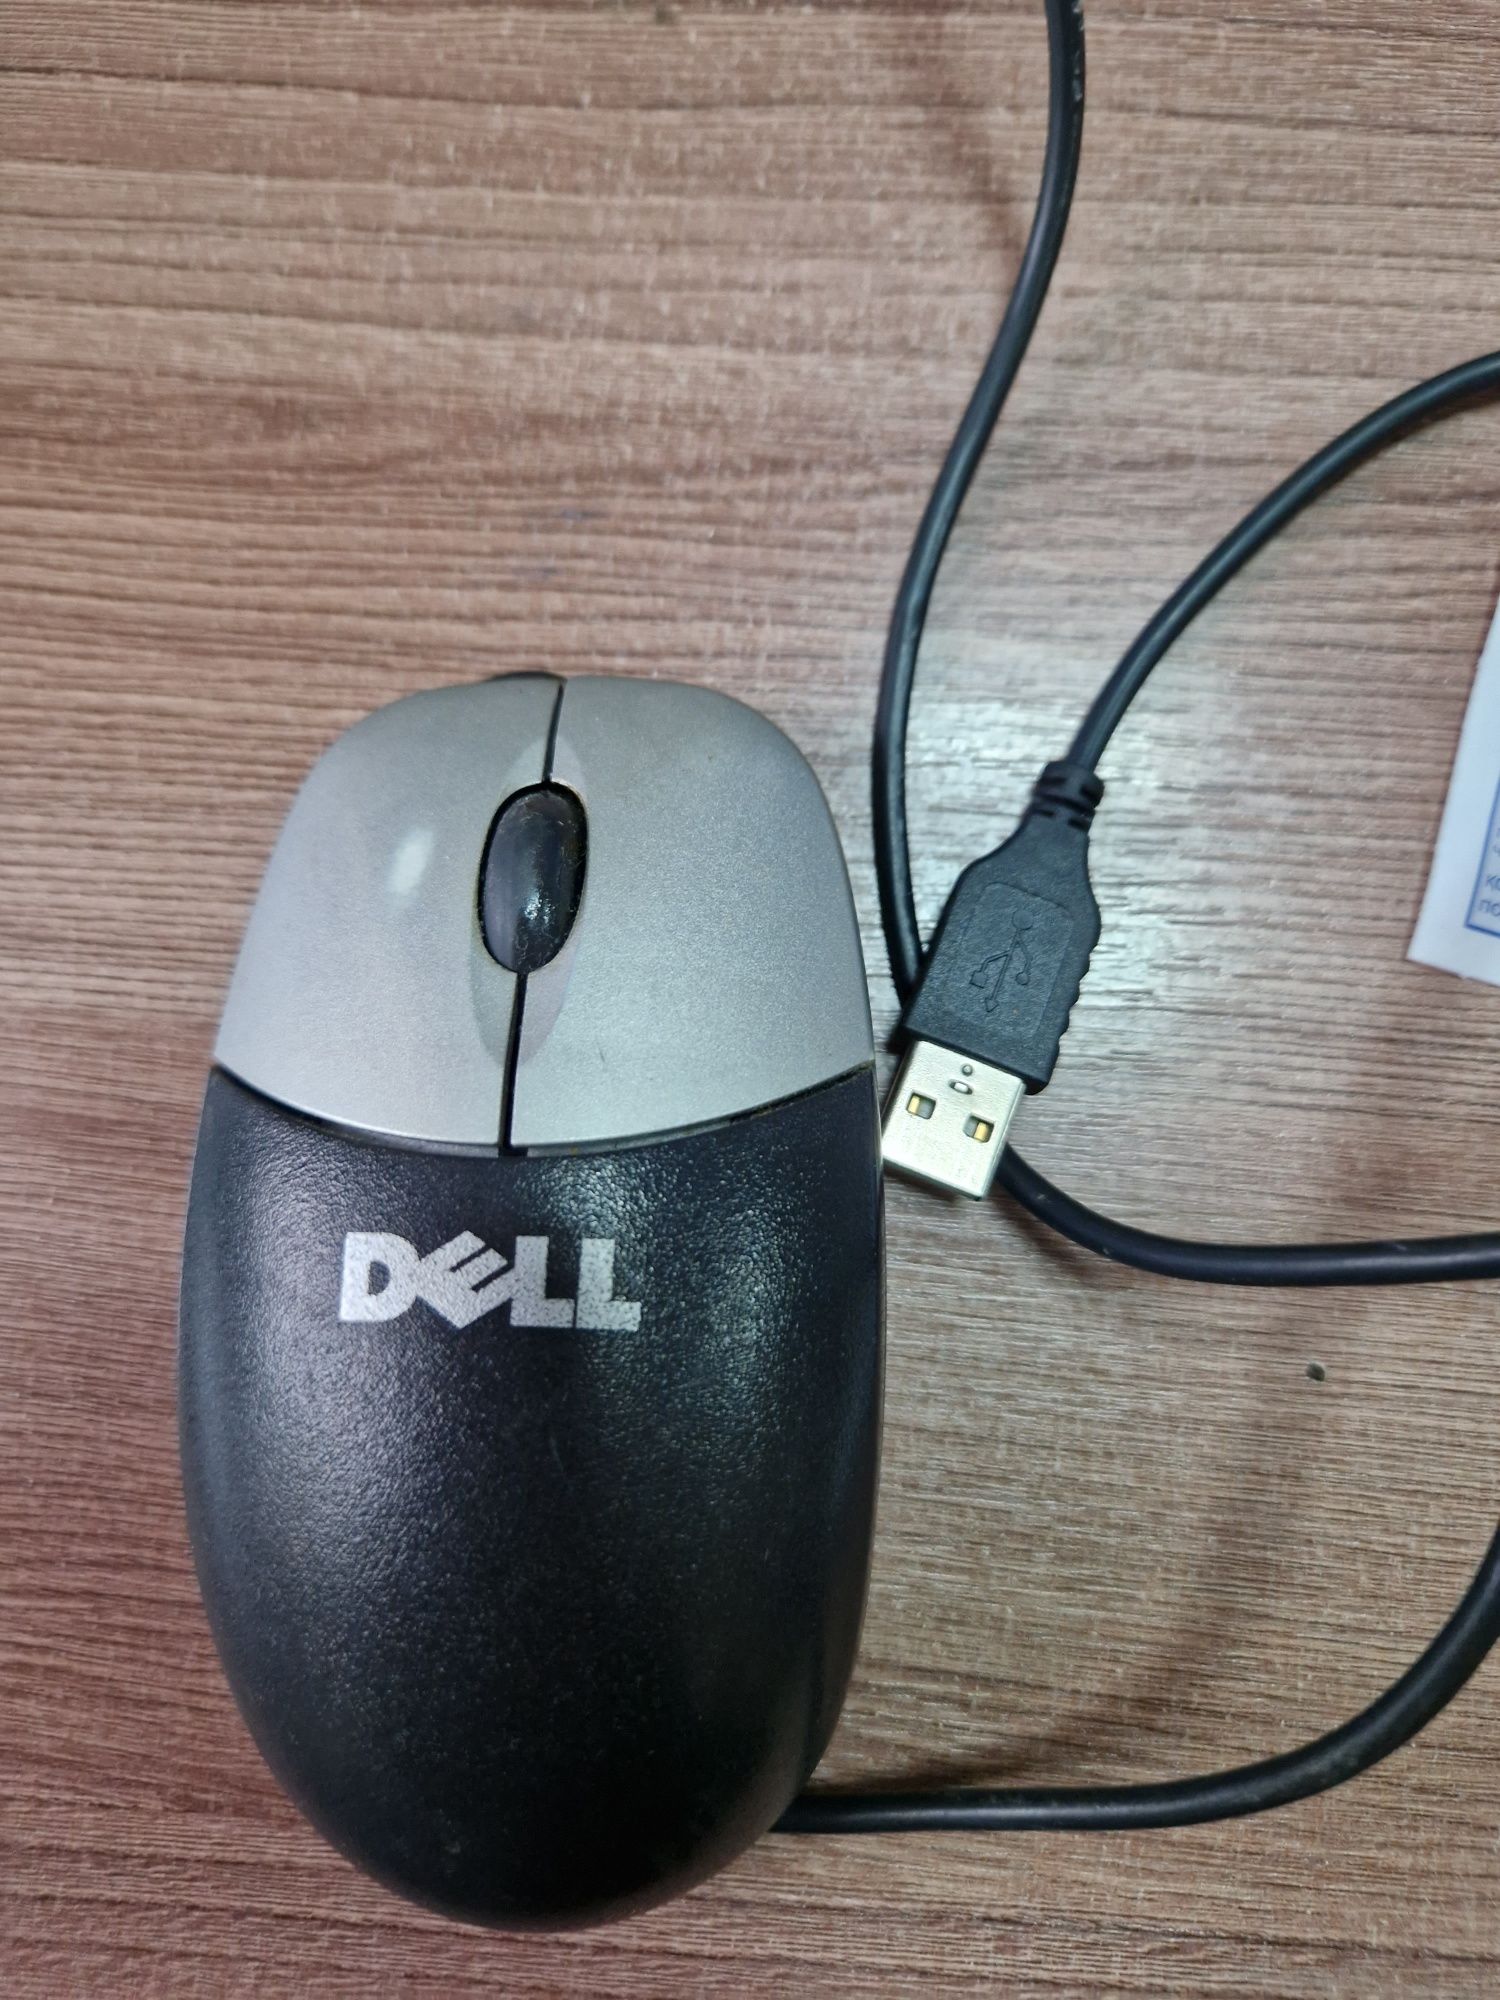 Мышь для компьютера, проводной,USB.